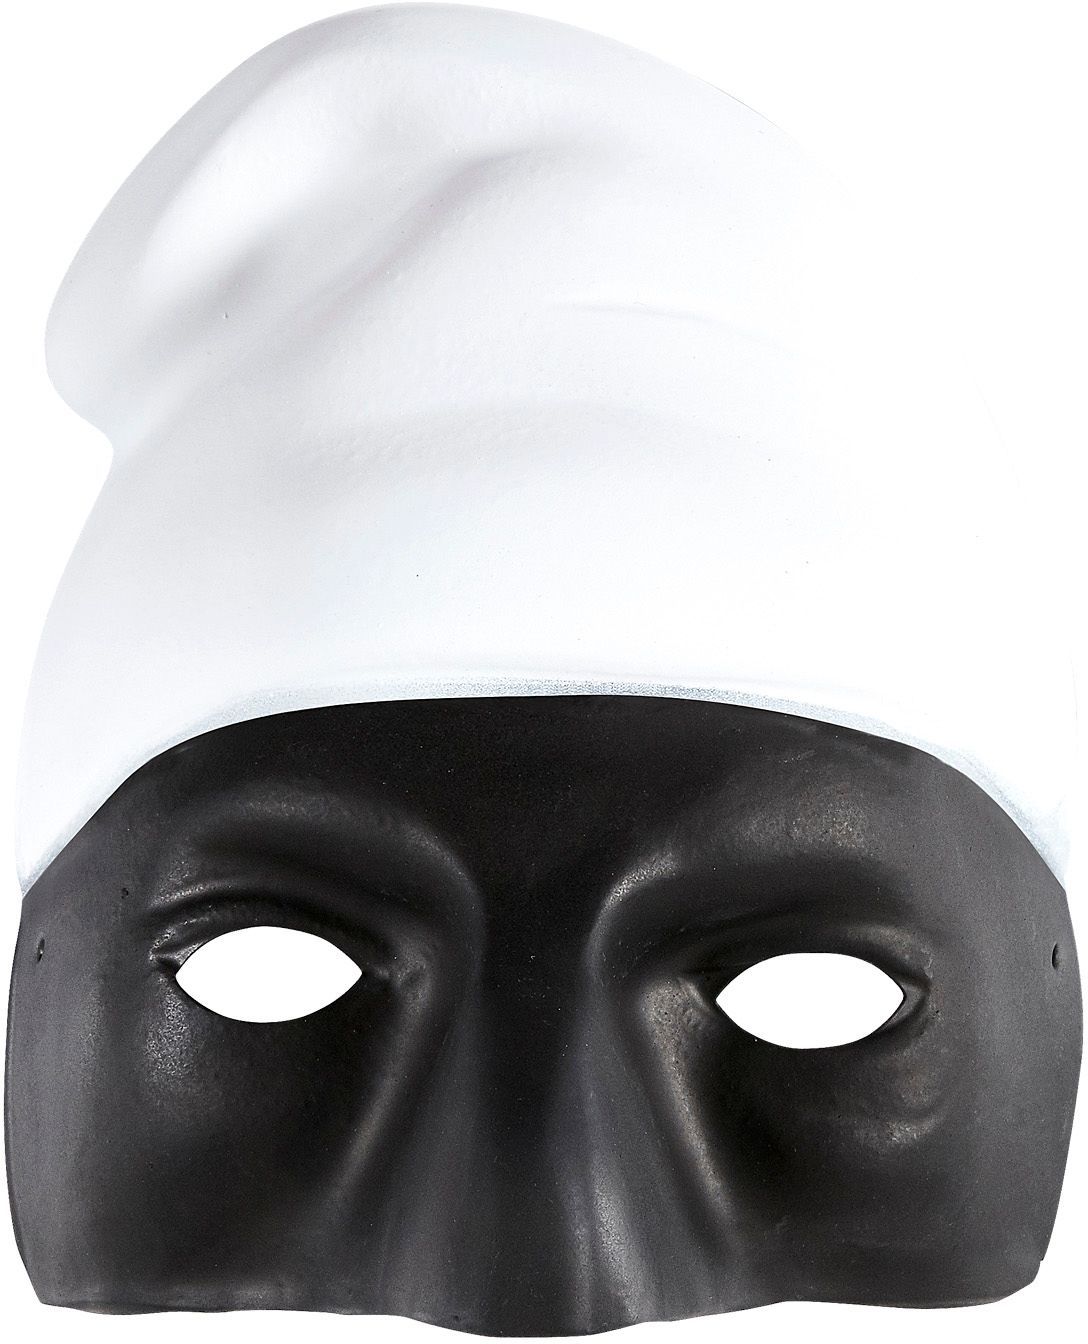 Zwart Pulcinella masker